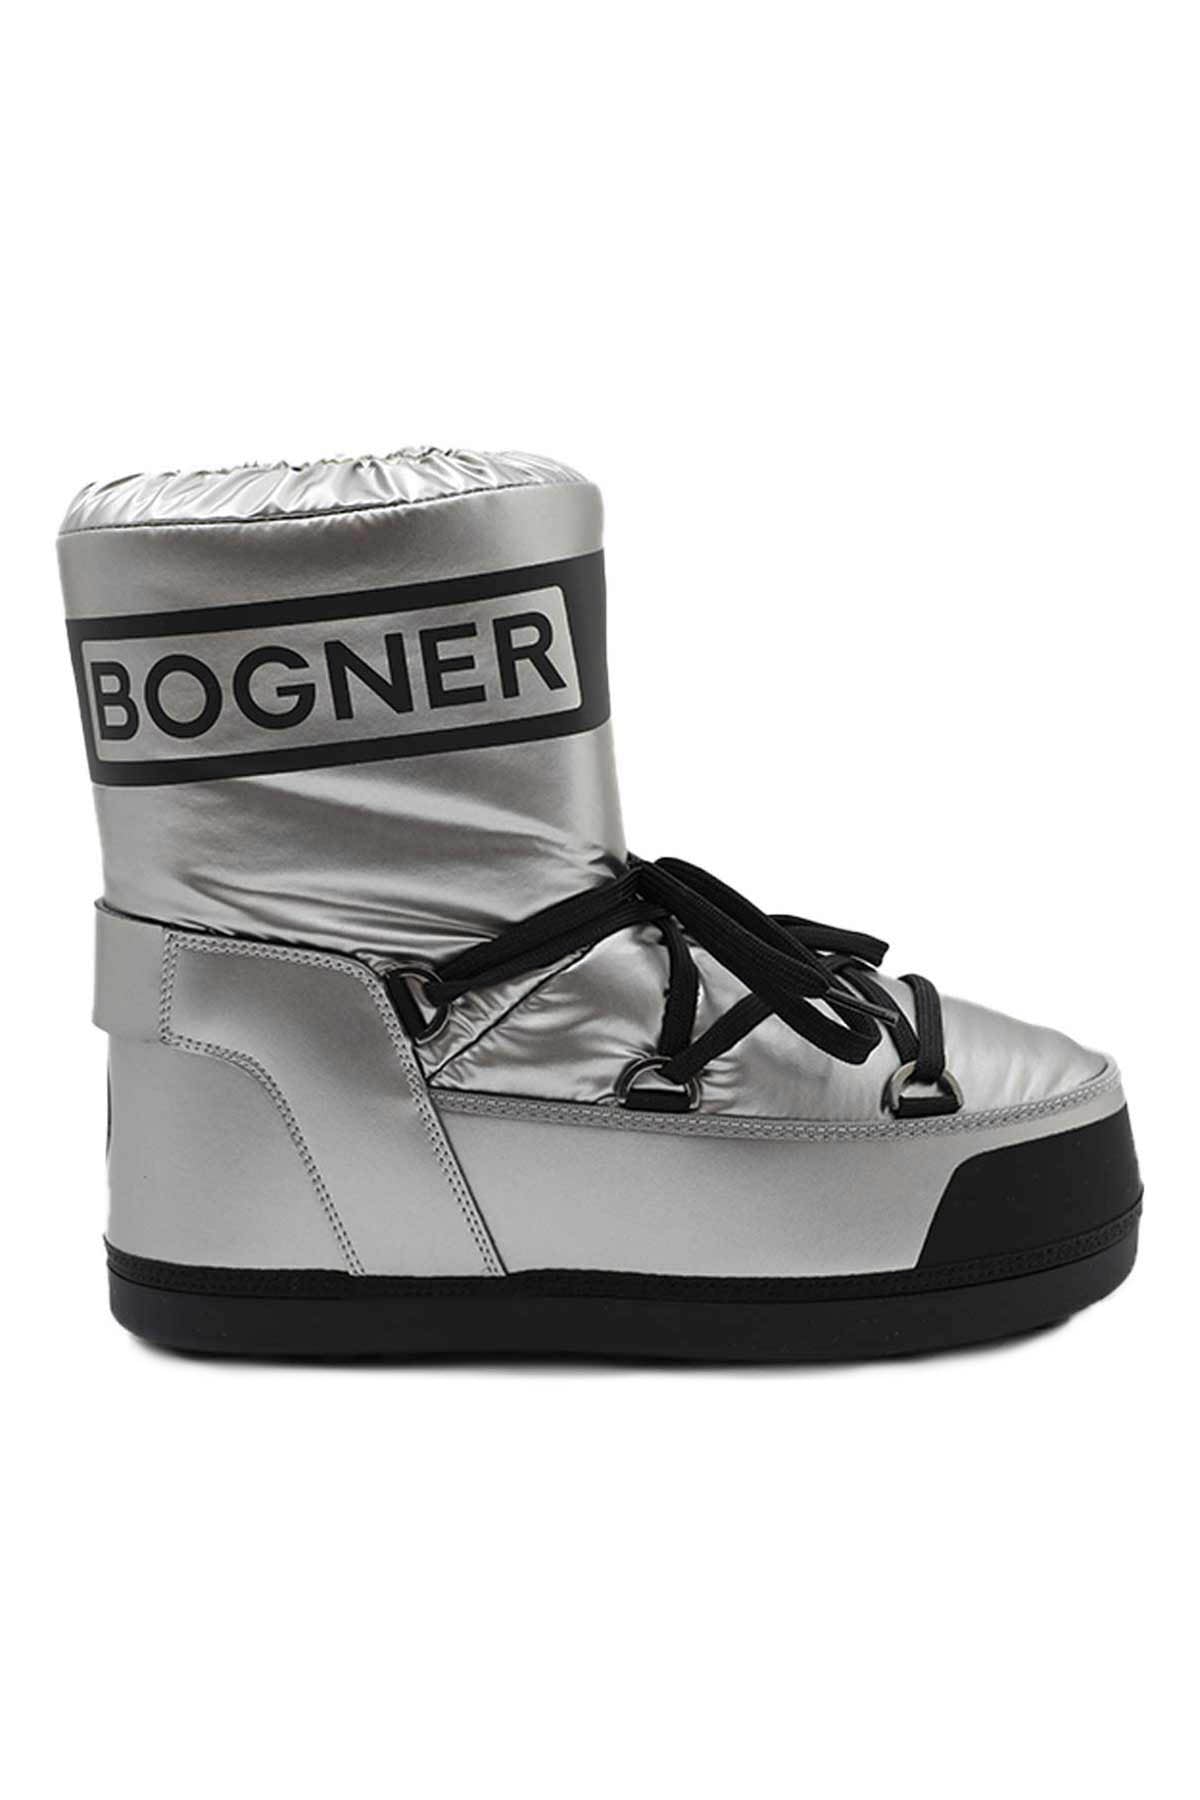 Bogner Trois Vallees Kar Botu-Libas Trendy Fashion Store